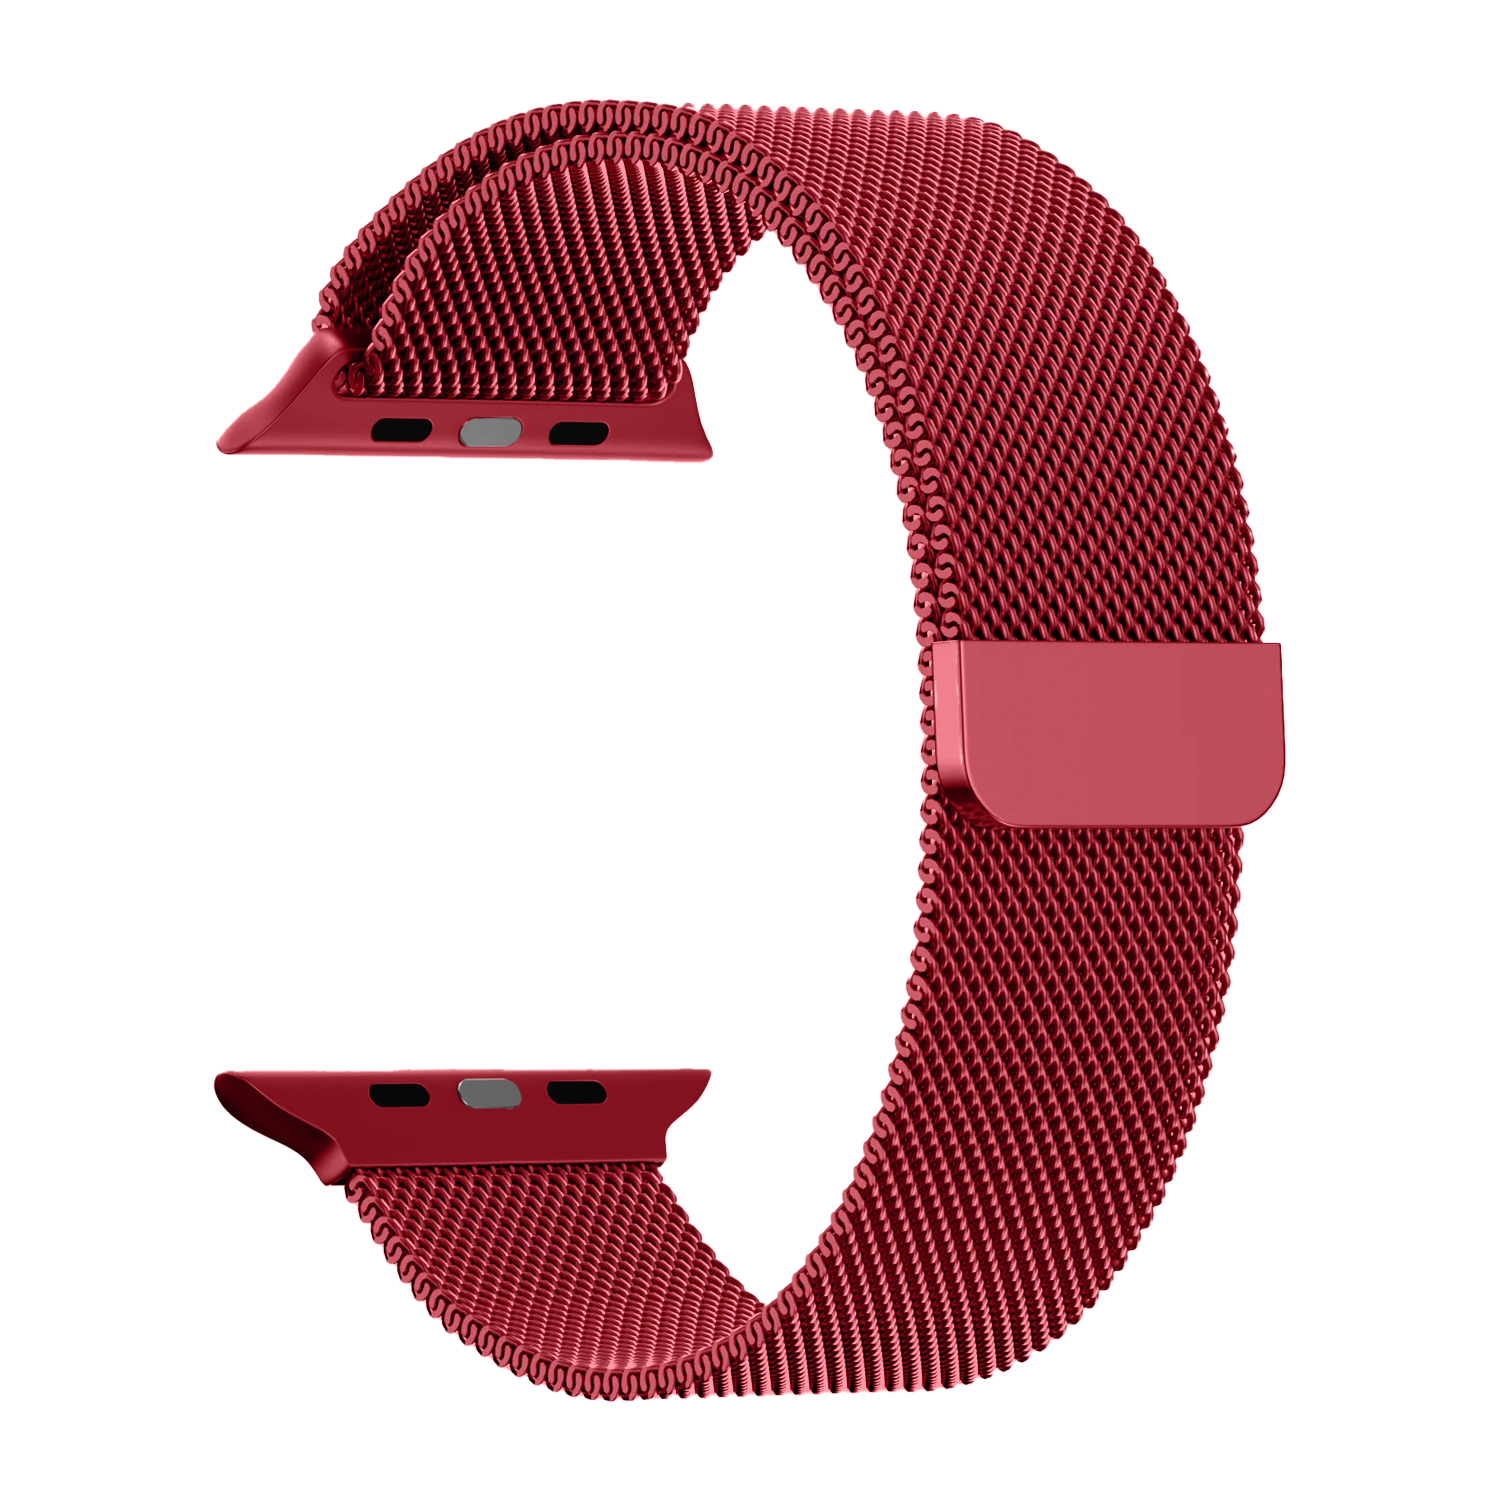 Ремешок для APL watch 38/40mm Milanese loop Красный (Red)